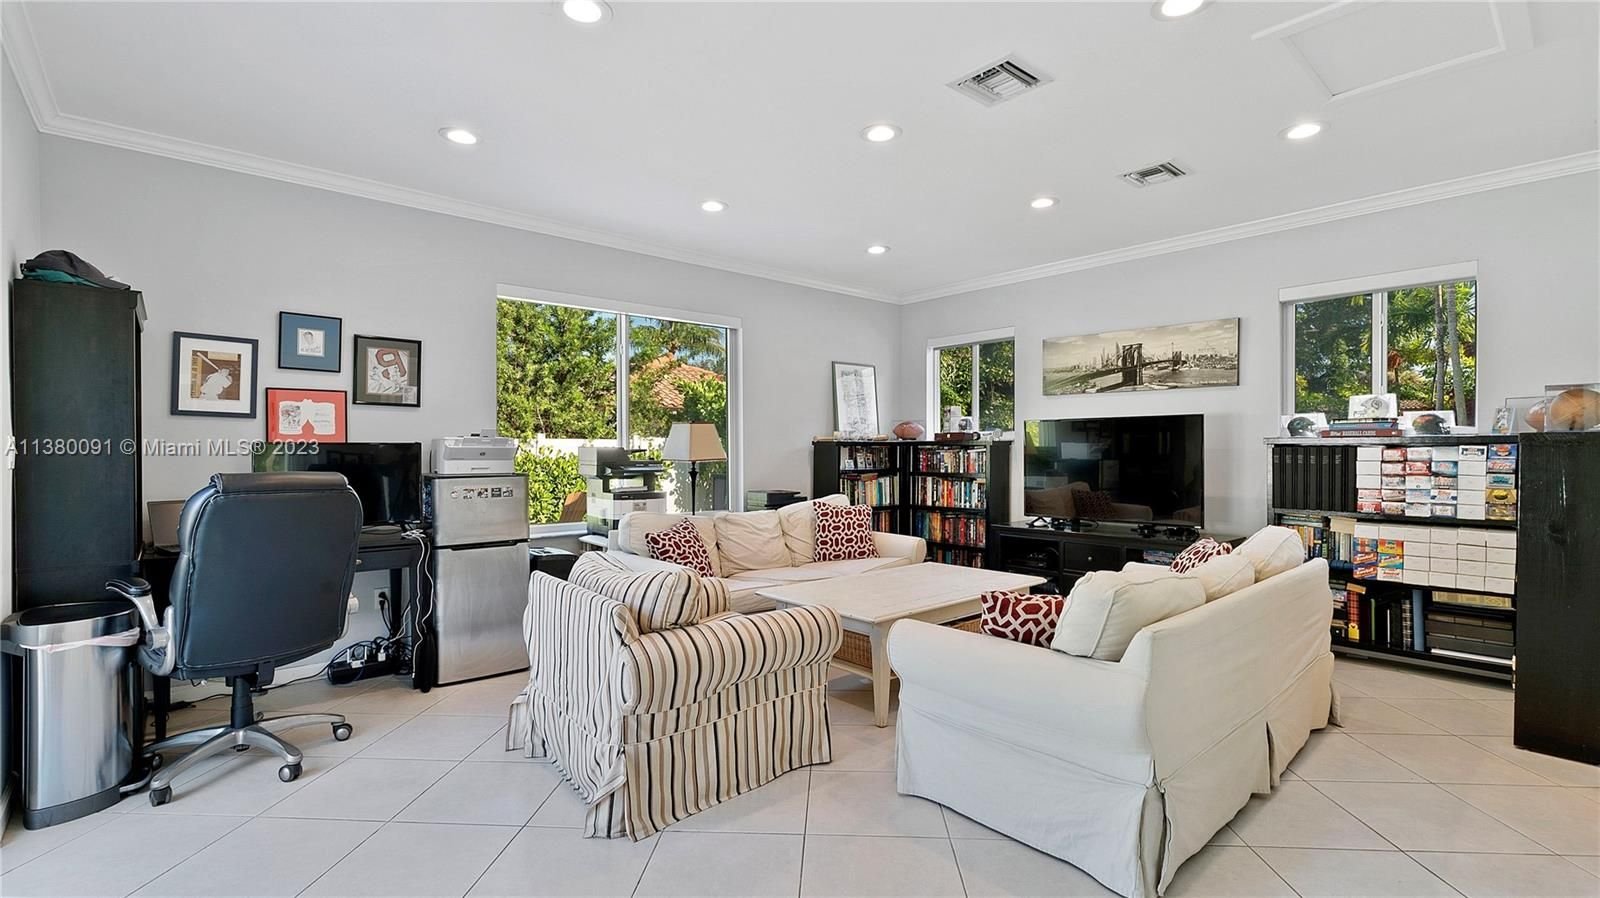 Real estate property located at 4477 Michigan Ave, Miami-Dade County, Miami Beach, FL